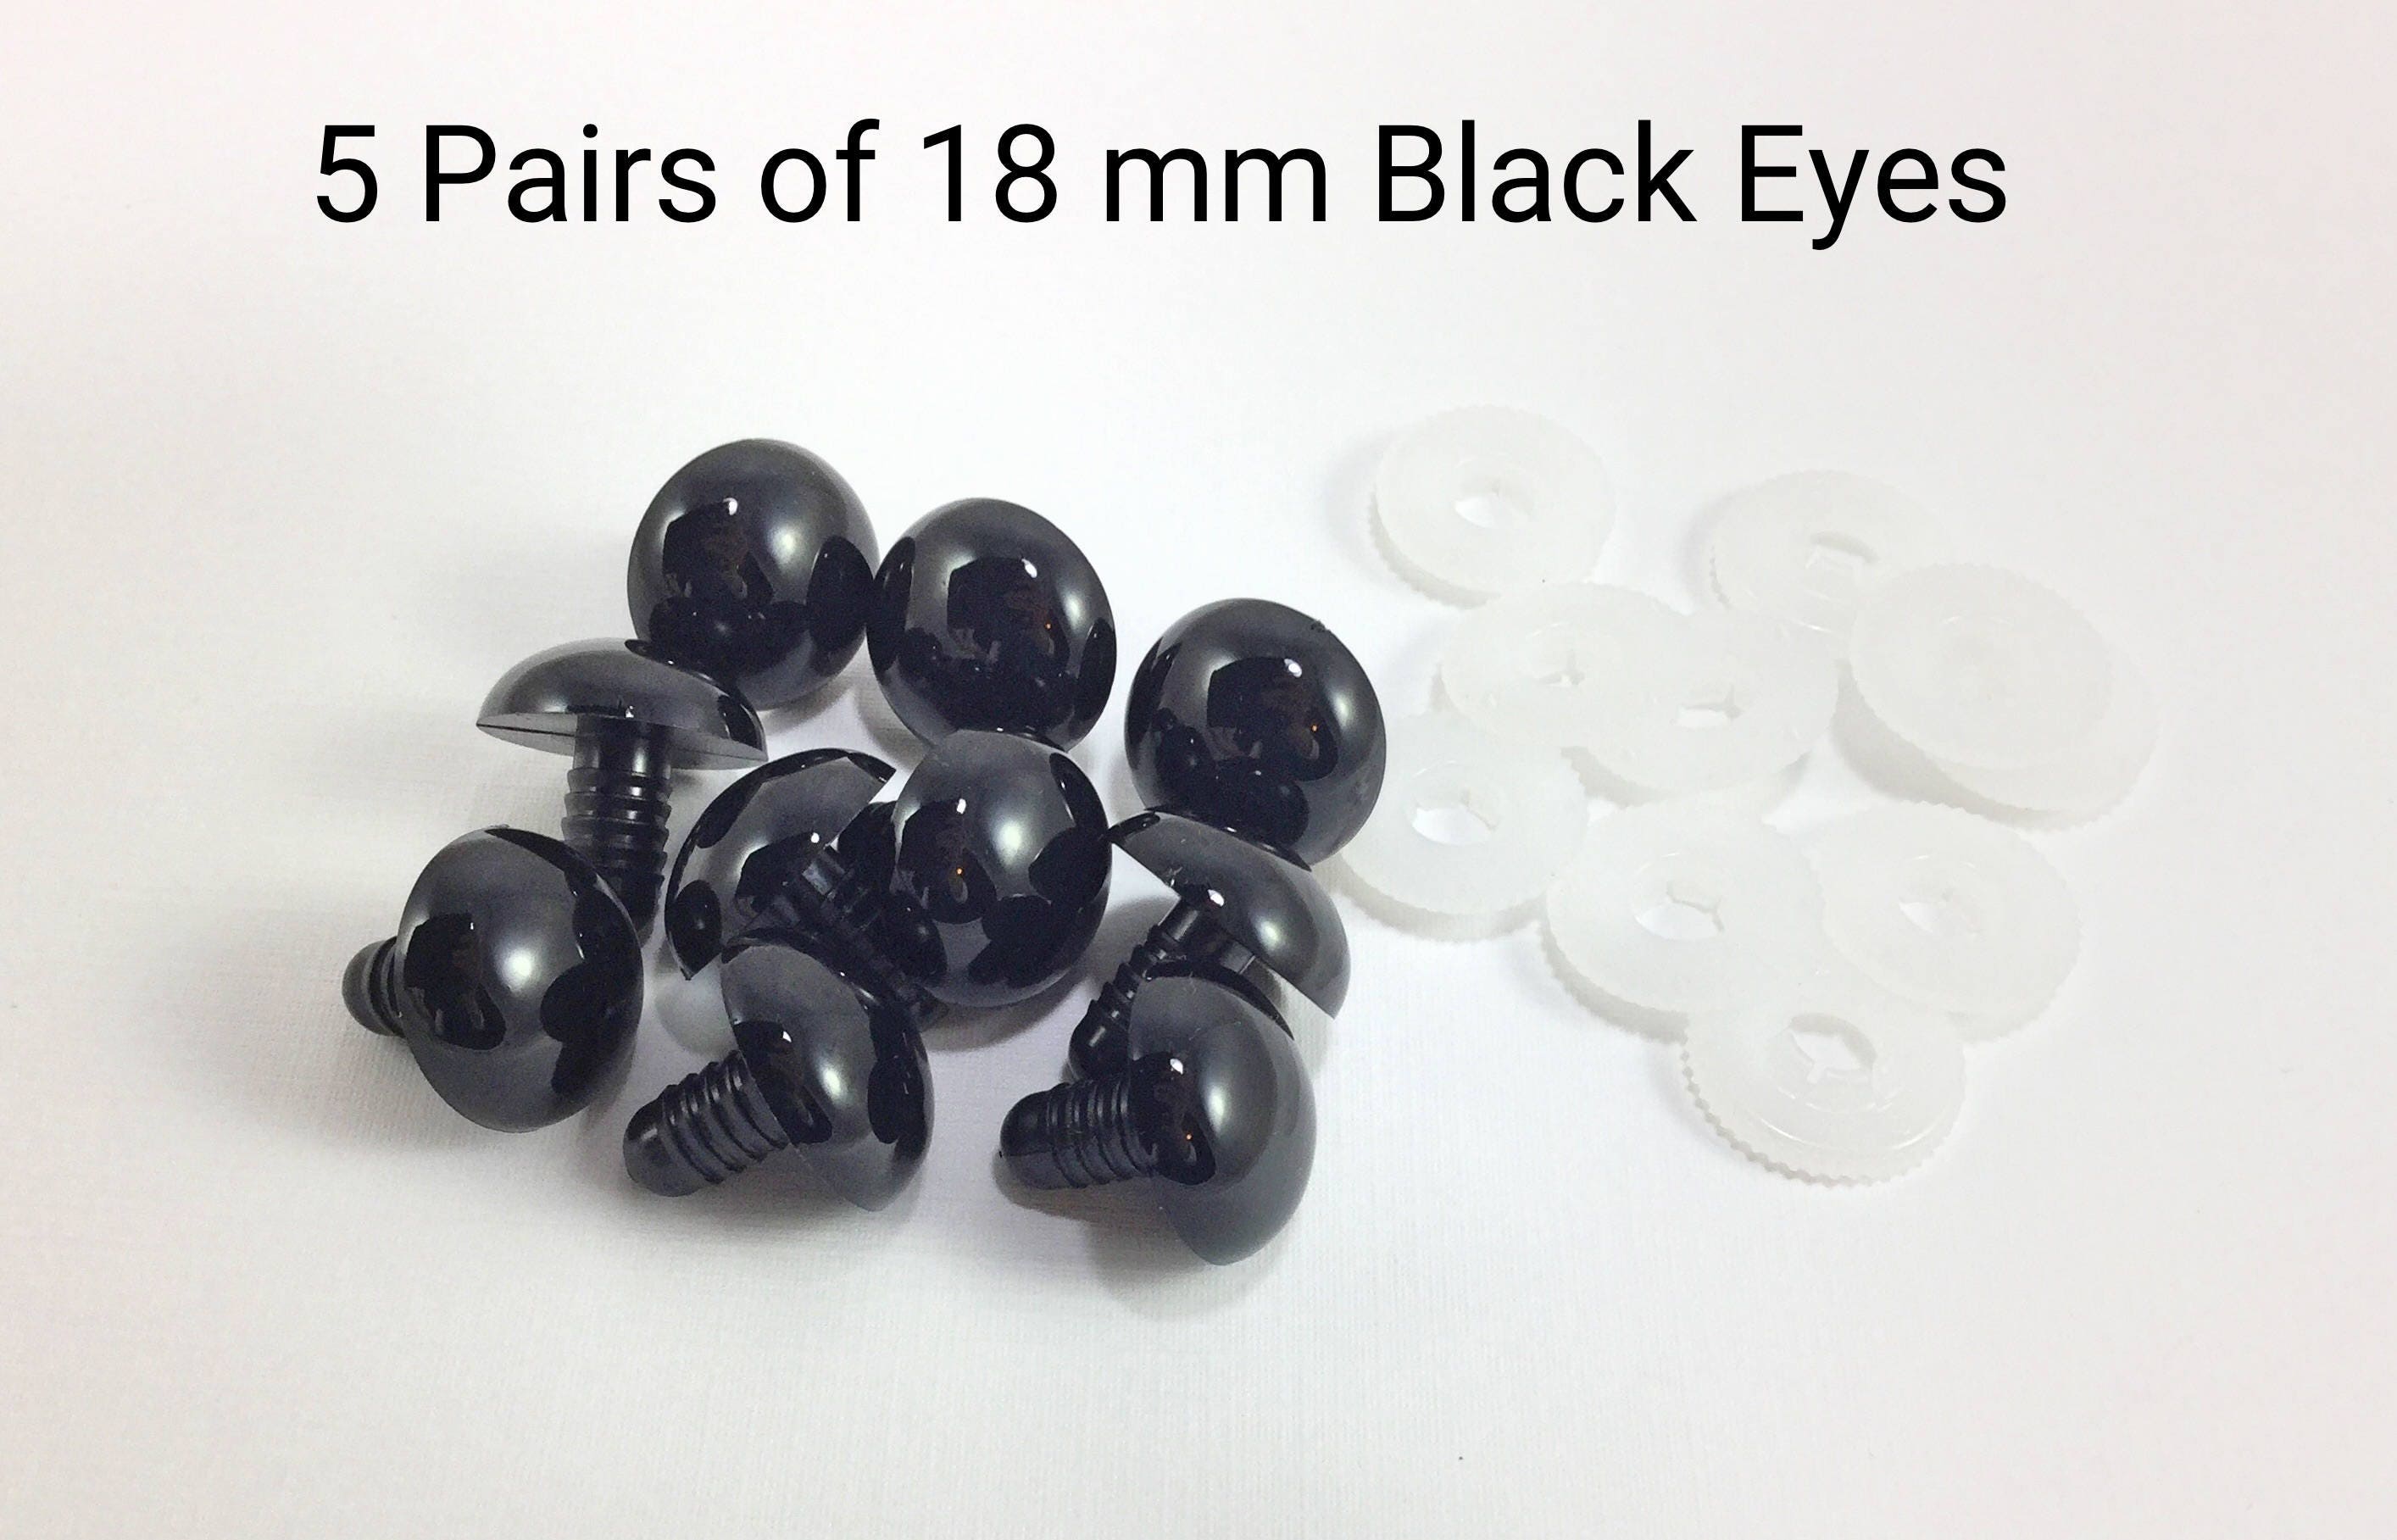 40mm Black Safety Eyes/Plastic Eyes - 5 Pair